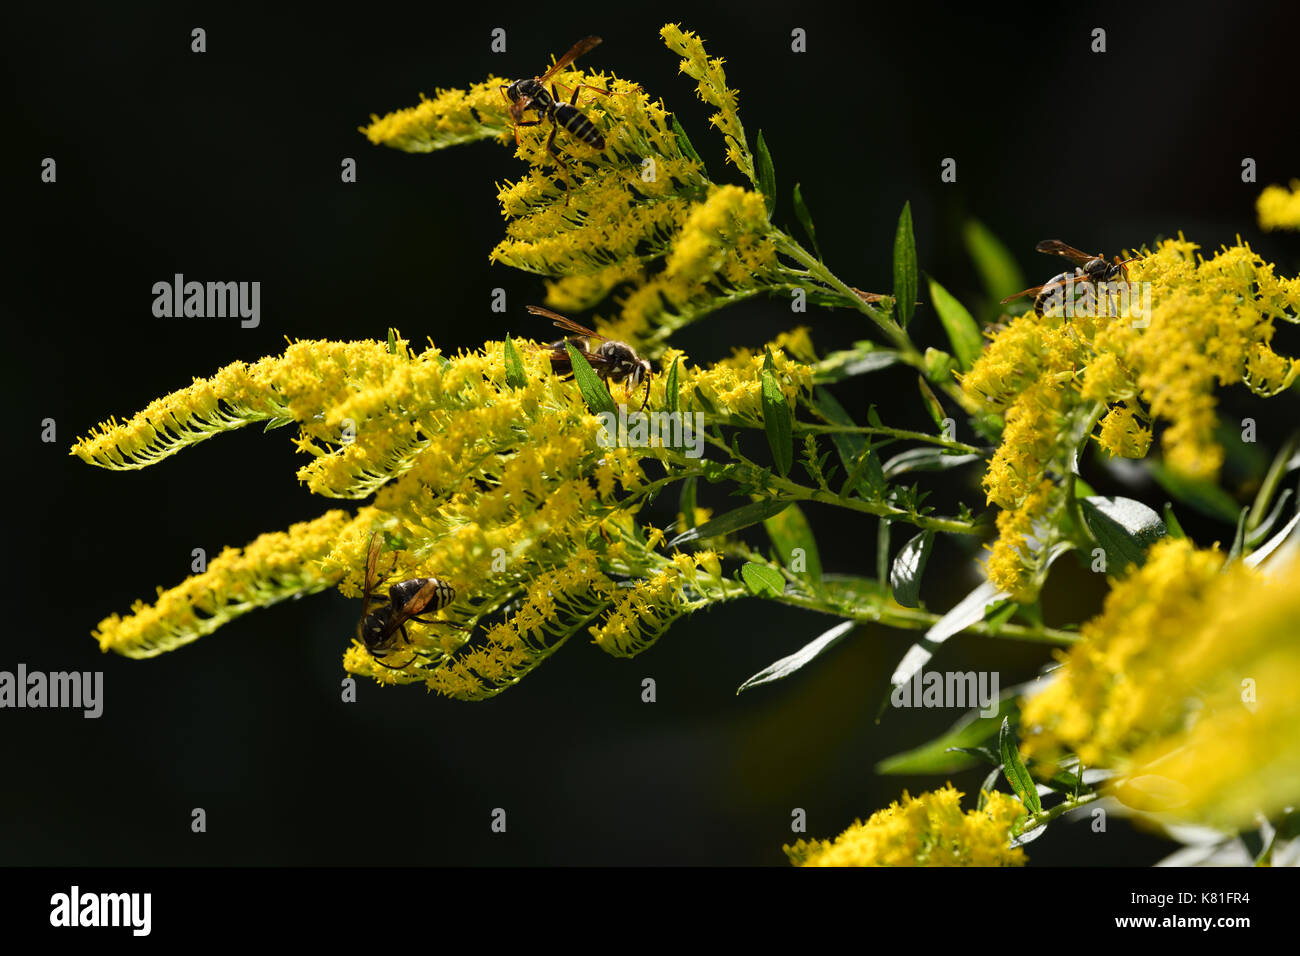 Deux variétés de guêpes papier la pollinisation des fleurs jaunes d'une verge d'herbacée vivace plante en plein soleil toronto canada Banque D'Images